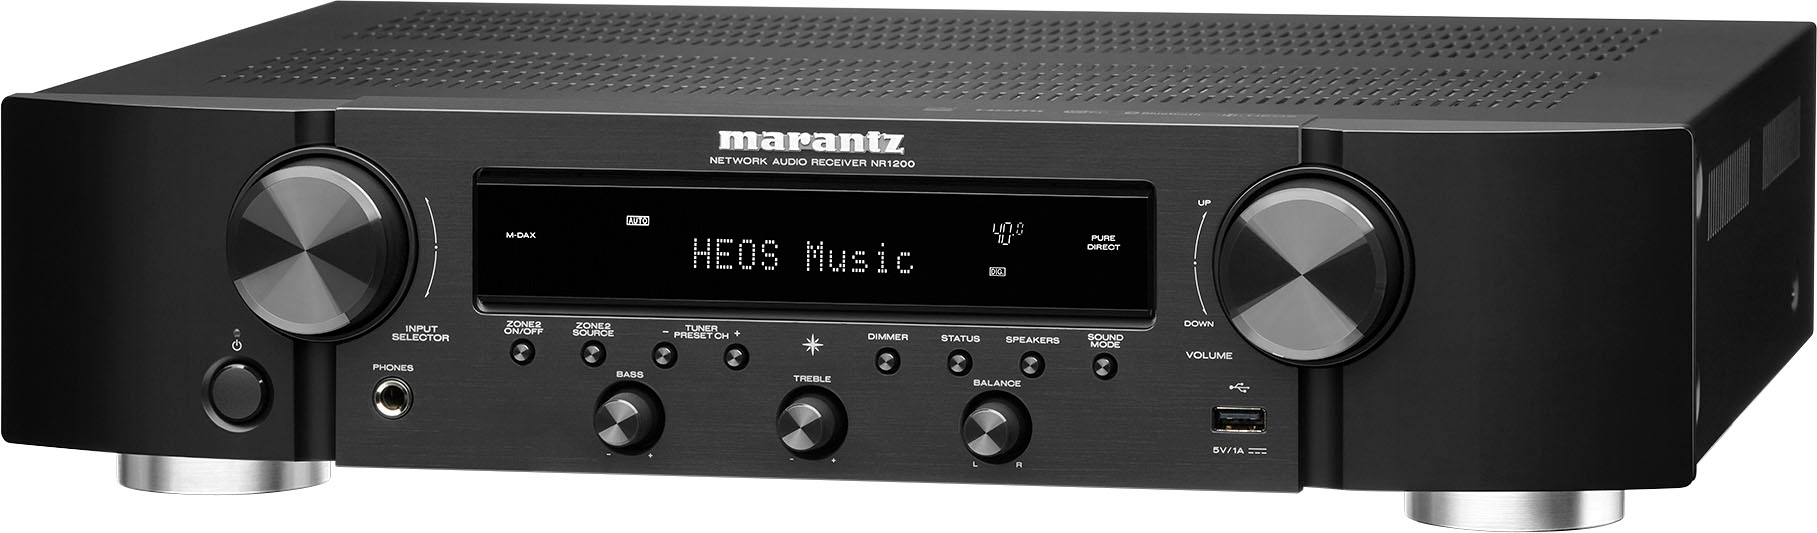 Best Buy: Marantz NR1200 AV Receiver | 2-Ch Home Theater Amp